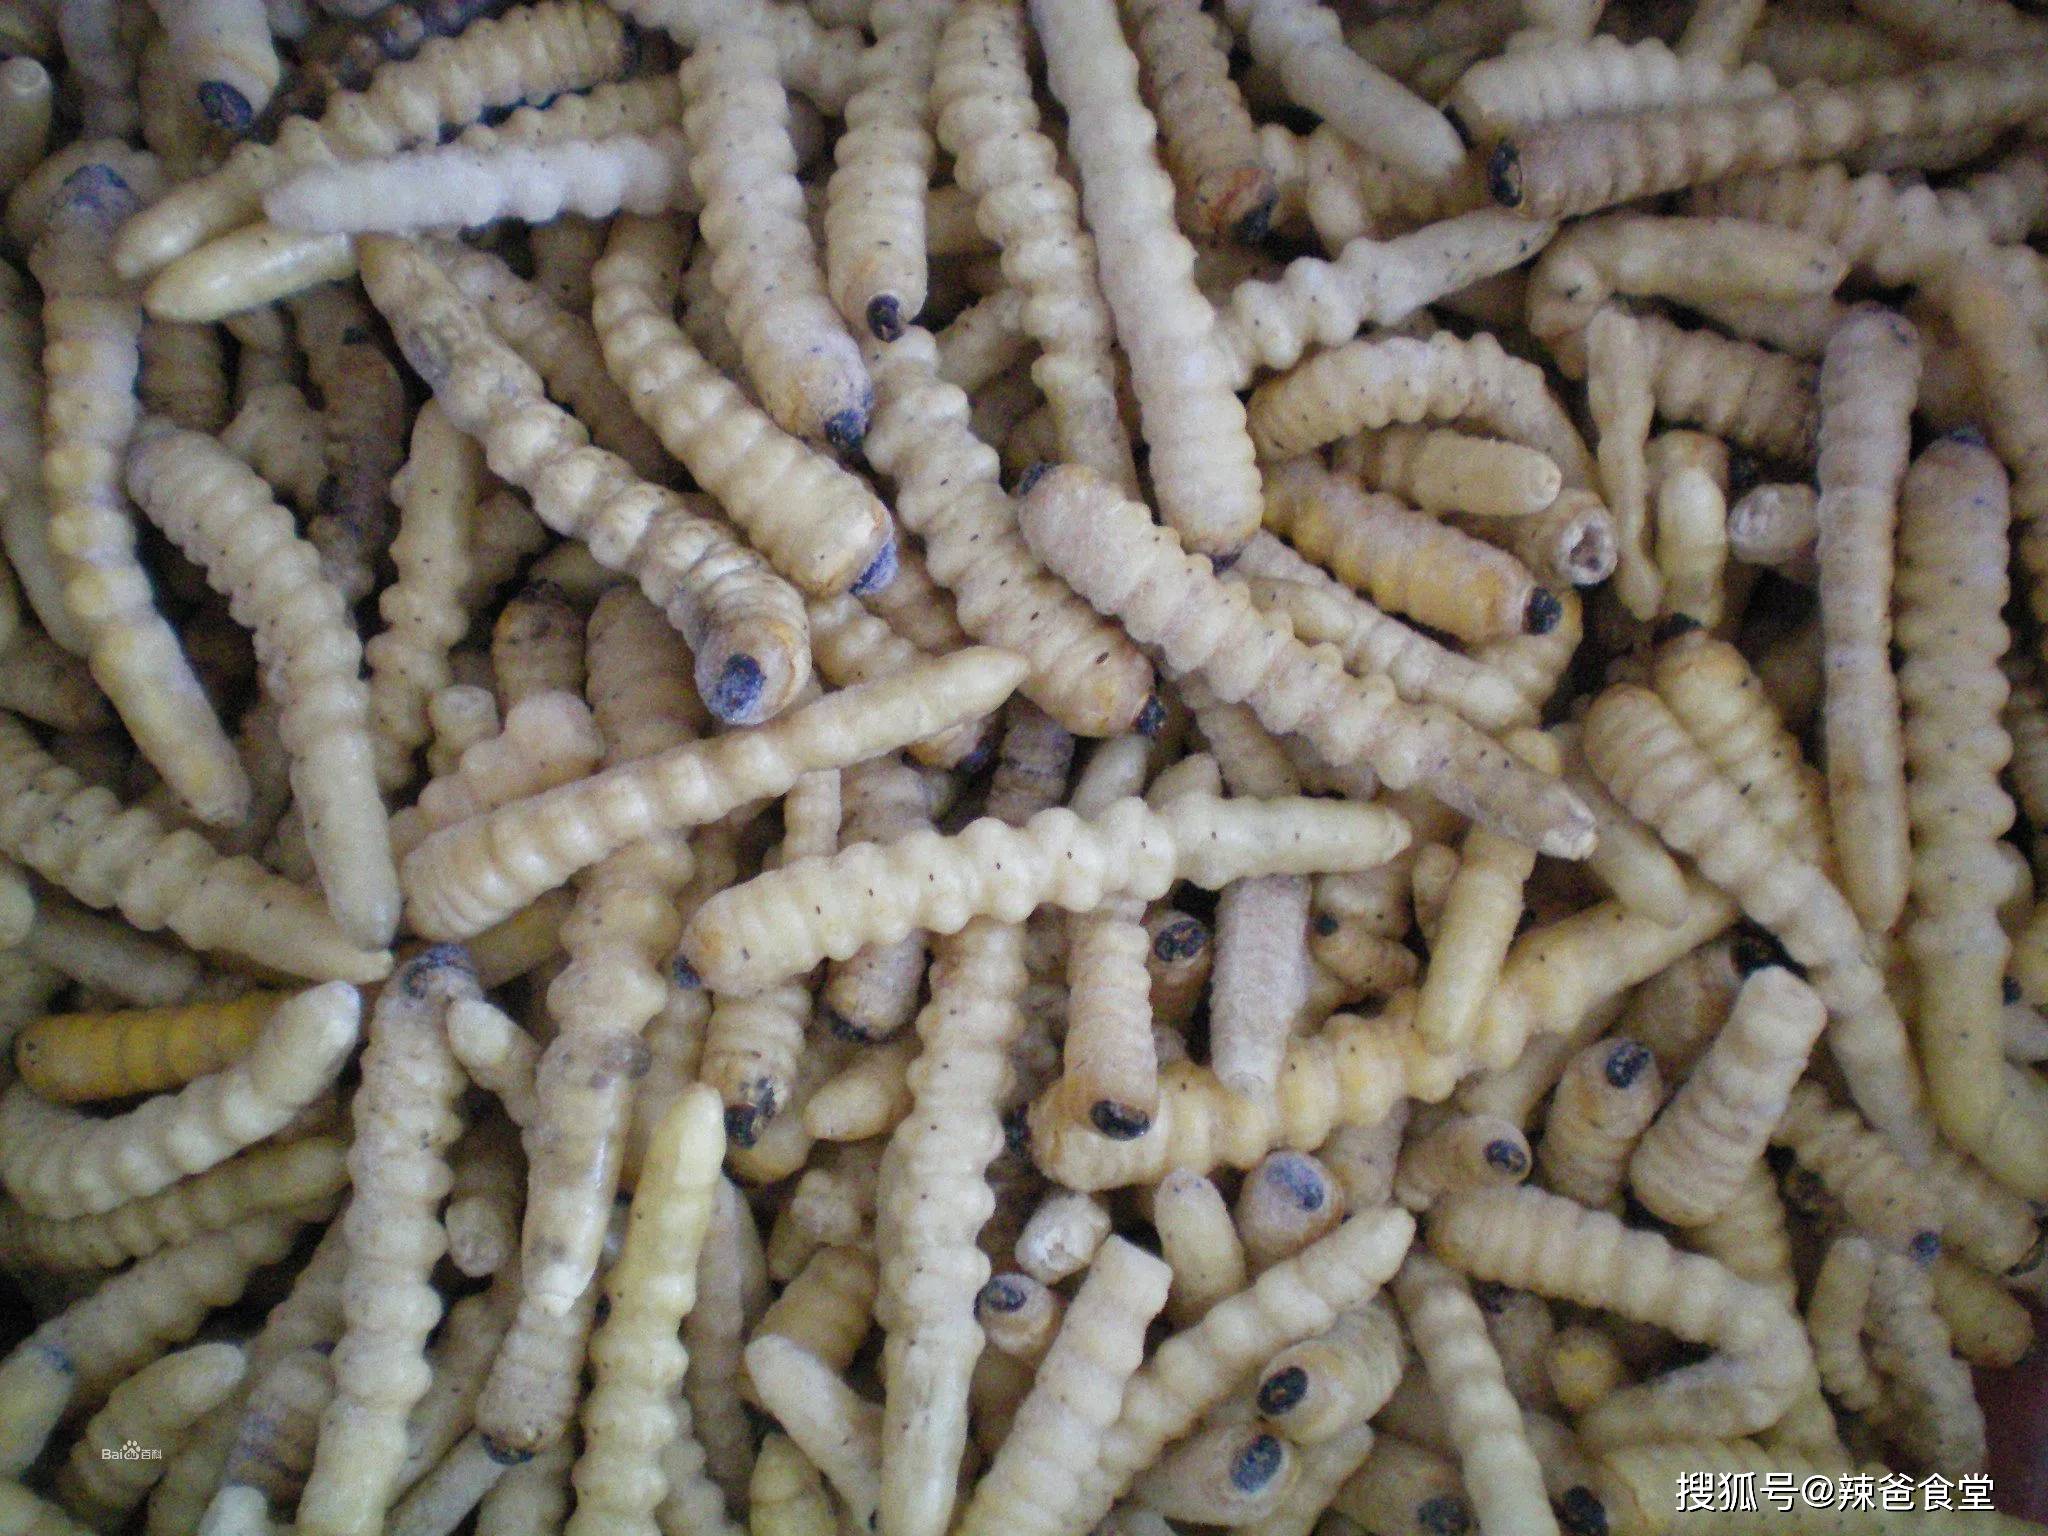 炸虫，泰国著名街头食品 库存图片. 图片 包括有 嘎吱咬嚼, 聚会所, 深深, 轰隆的, 油煎, 的百威 - 197838823